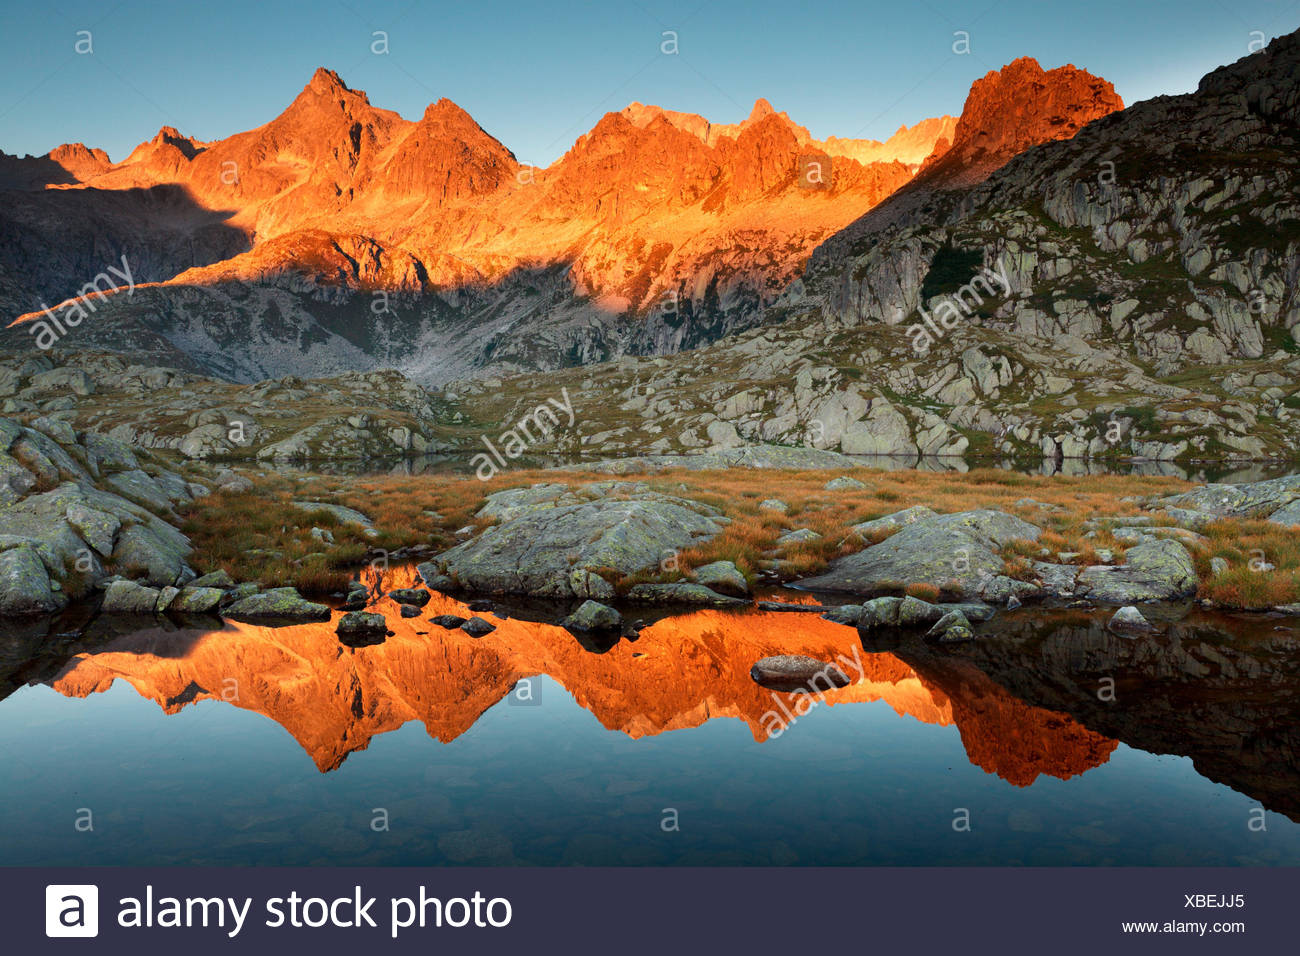 il-lago-nero-parco-naturale-adamello-brenta-trentino-alto-adige-italia-la-presanella-della-catena-di-sunrise-xbejj5.jpg